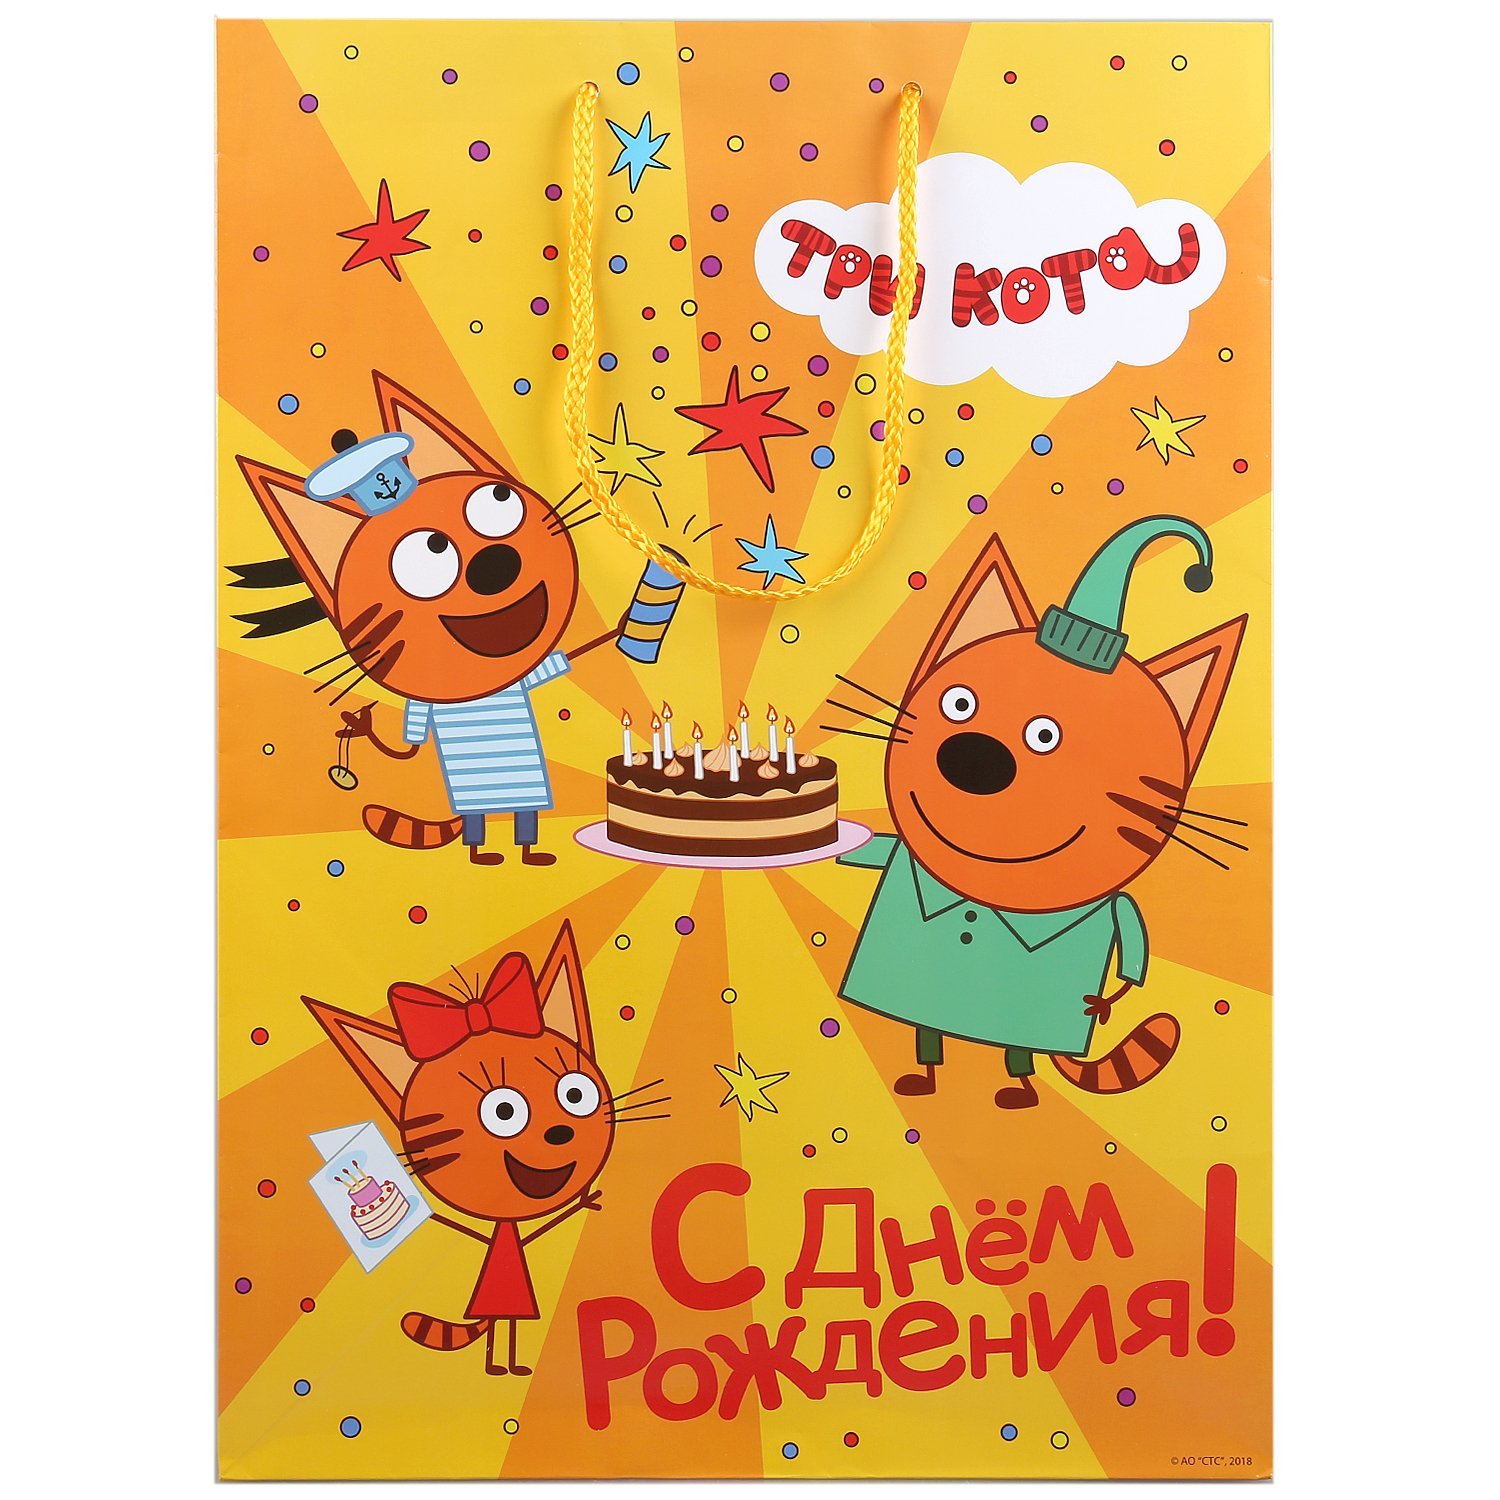 3 кота открытку